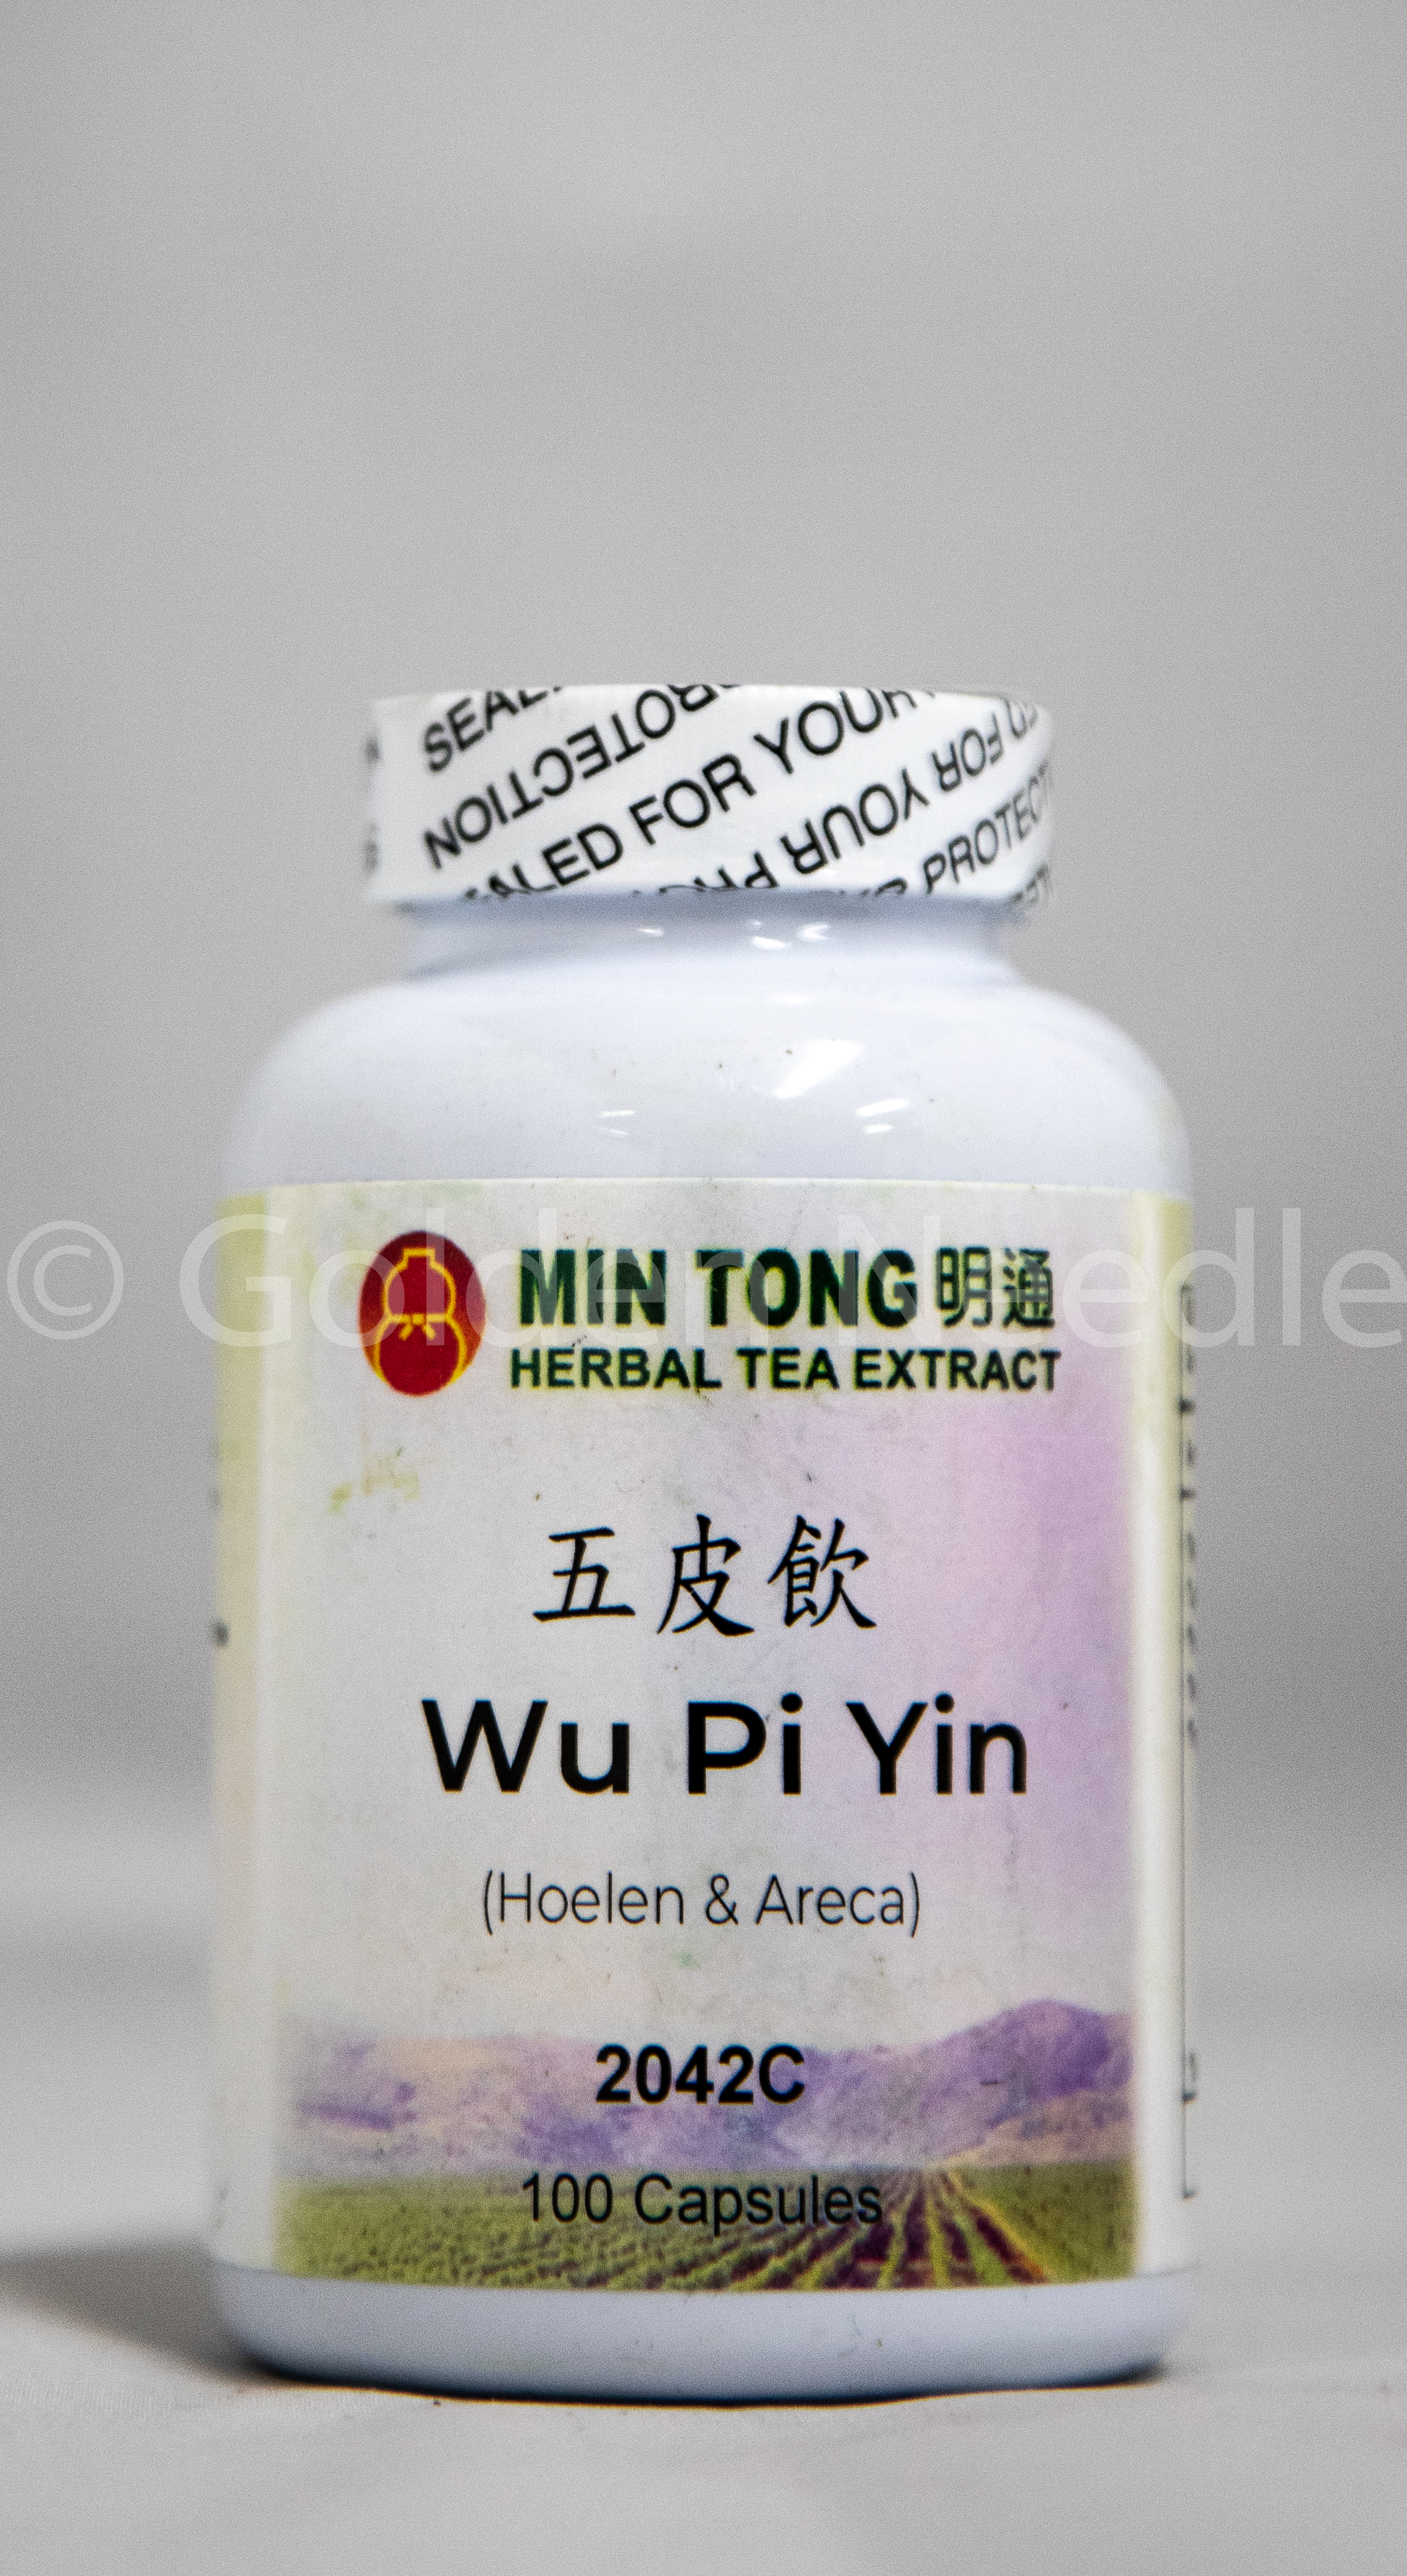 Wu Pi Yin Capsules